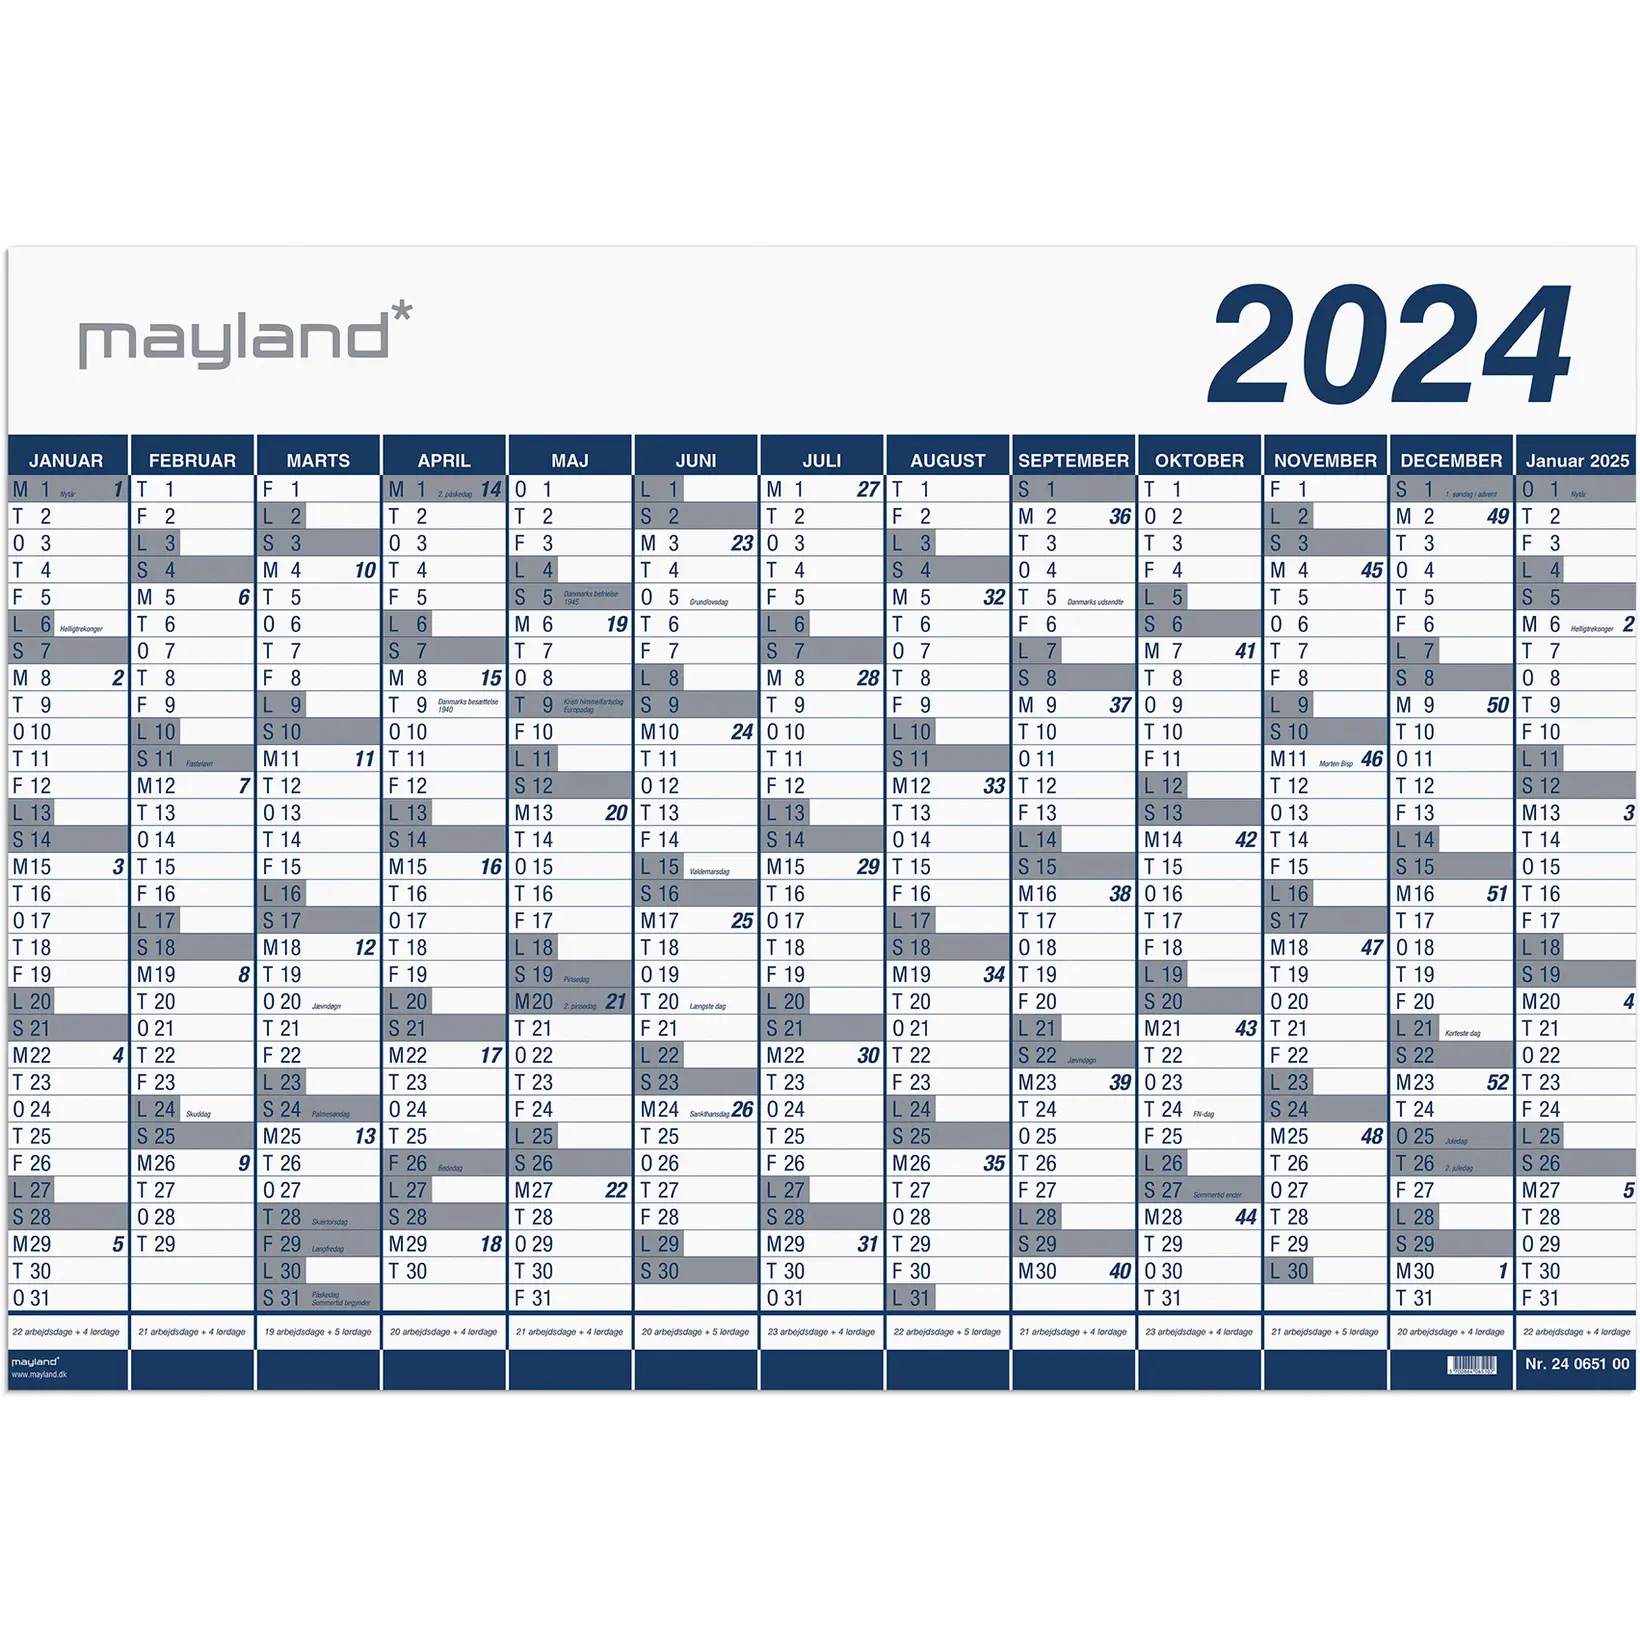 Formode sarkom Litteratur Mayland Kalender 2023 | Køb billig Kalender fra Mayland 📆